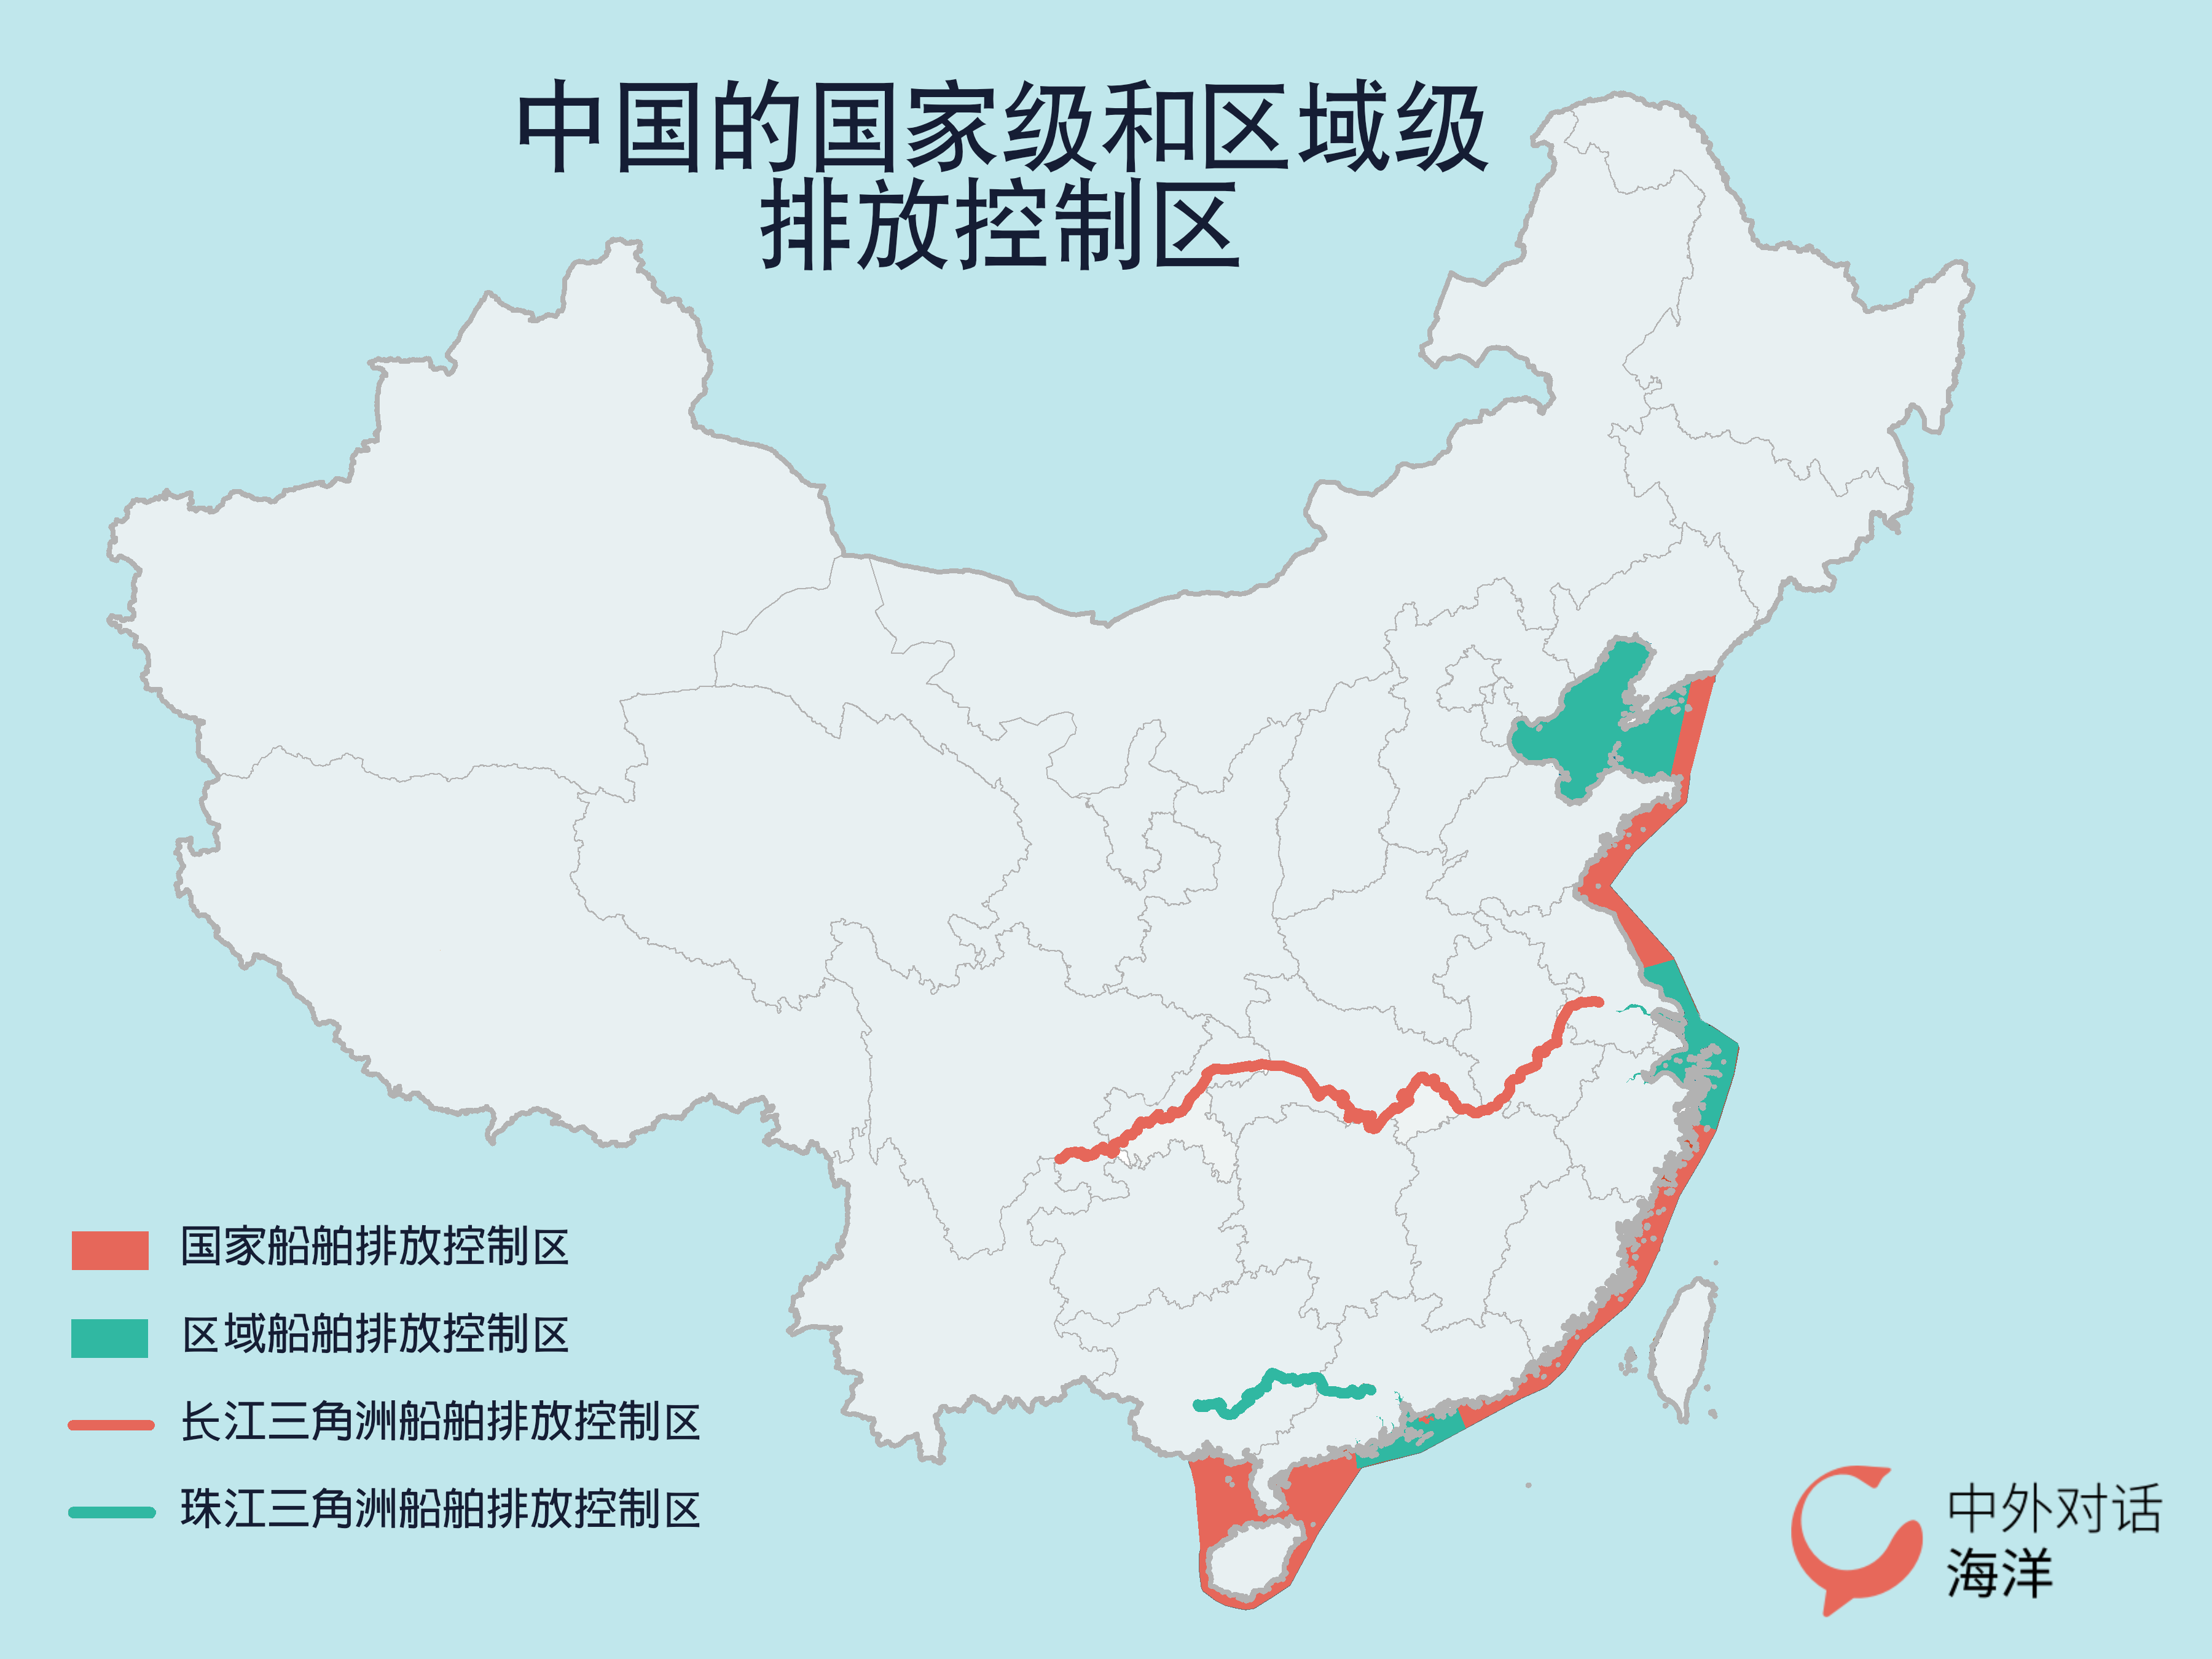 中国的国家级和区域级排放控制区